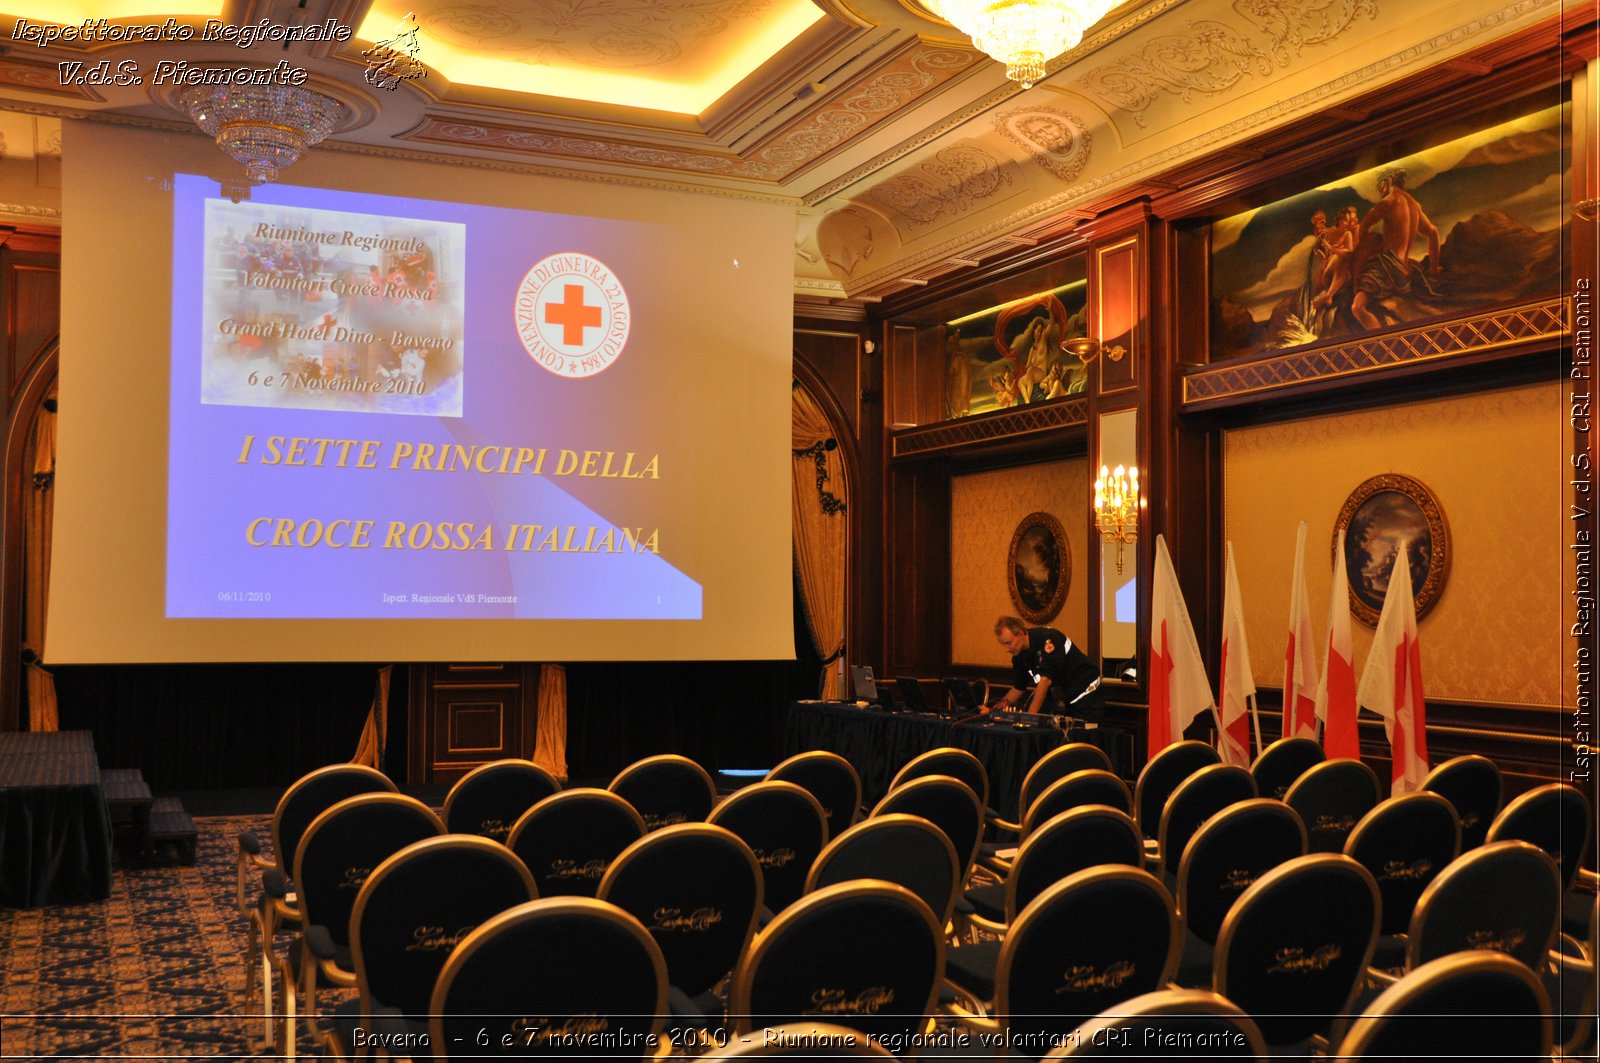 Baveno  - 6 e 7 novembre 2010 - Riunione regionale volontari CRI Piemonte -  Croce Rossa Italiana - Ispettorato Regionale Volontari del Soccorso Piemonte